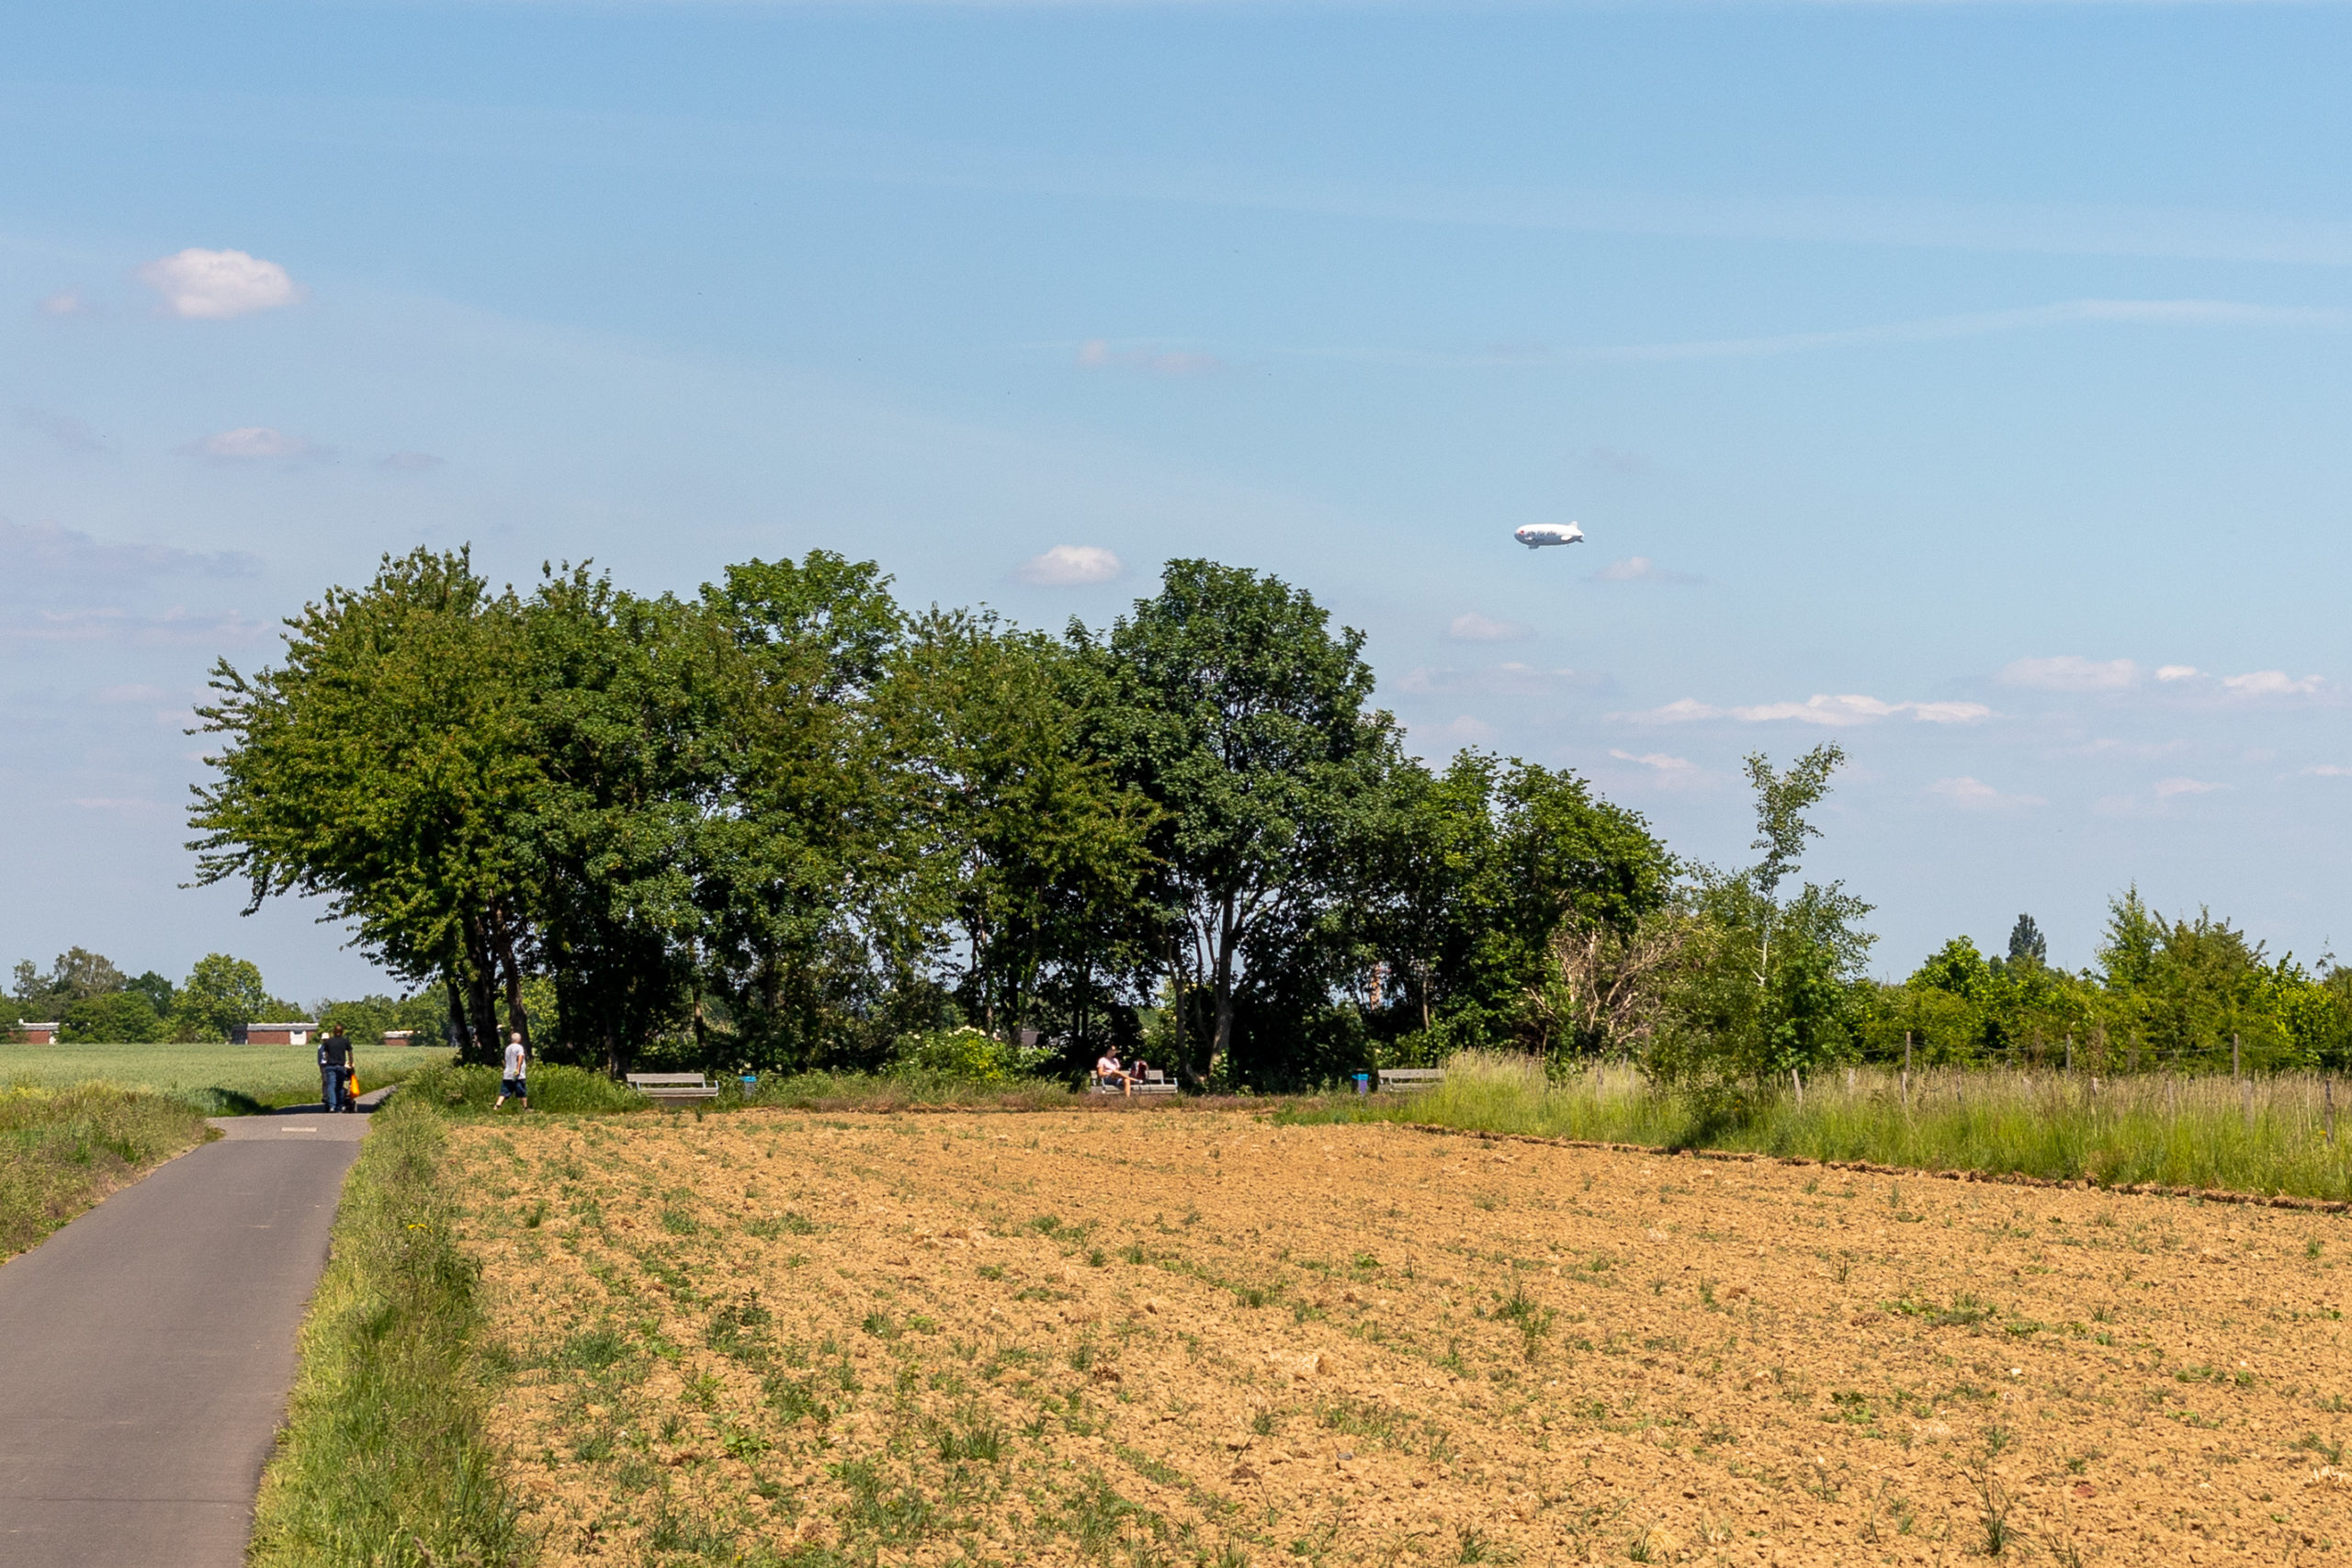 Ein Weg neben einem Feld, an der Kreuzung mehrere Bäume und Menschen. Über den Baumkronen sieht man einen Zeppelin schweben.